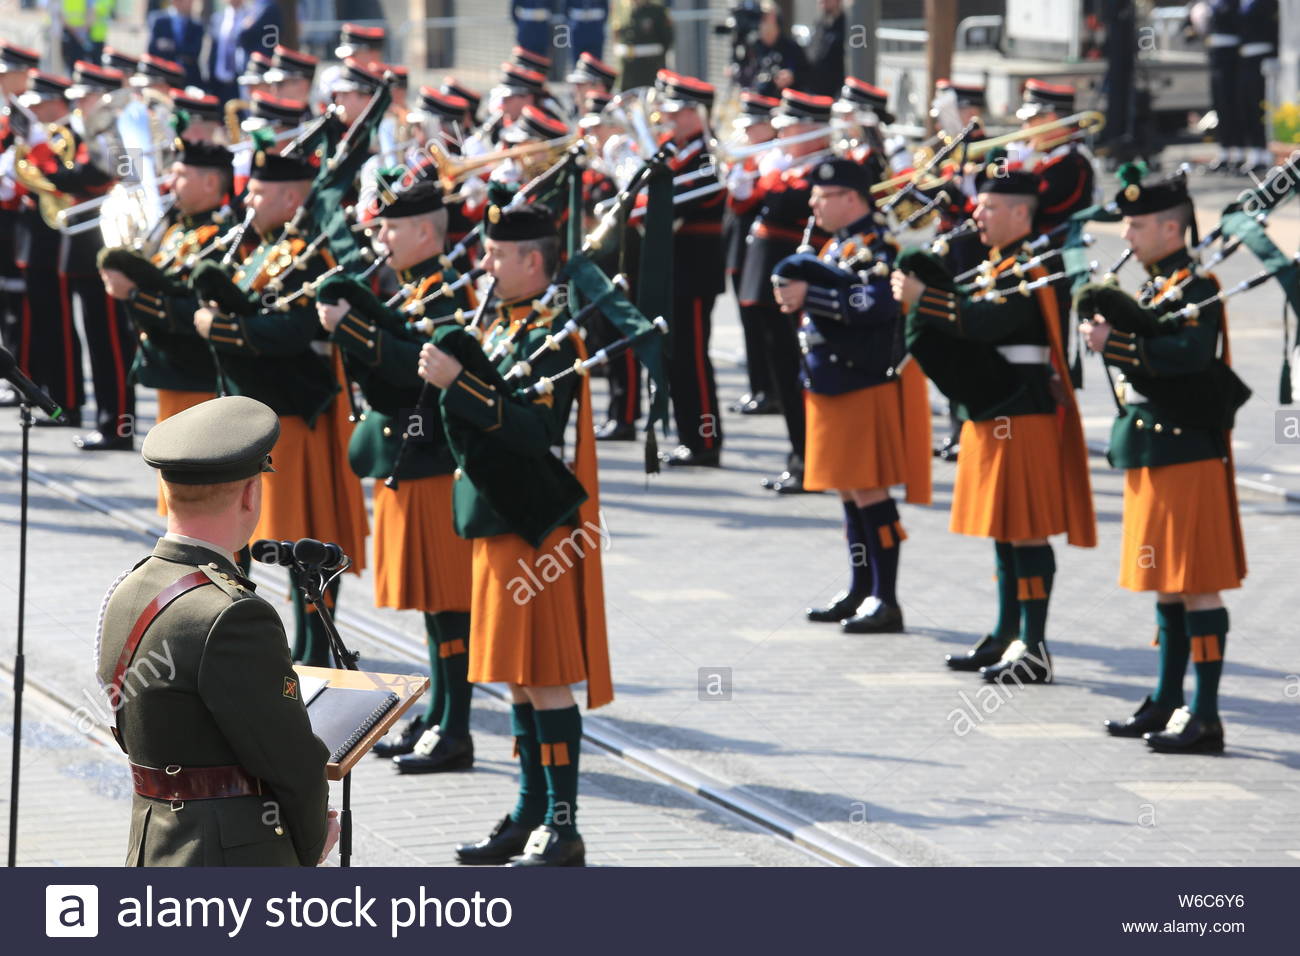 Un défilé militaire a eu lieu à Dublin pour commémorer le 1916 à la hausse. Président Michael D Higgins laisse une couronne en face de l'objet Stratégie de l'immeuble Banque D'Images